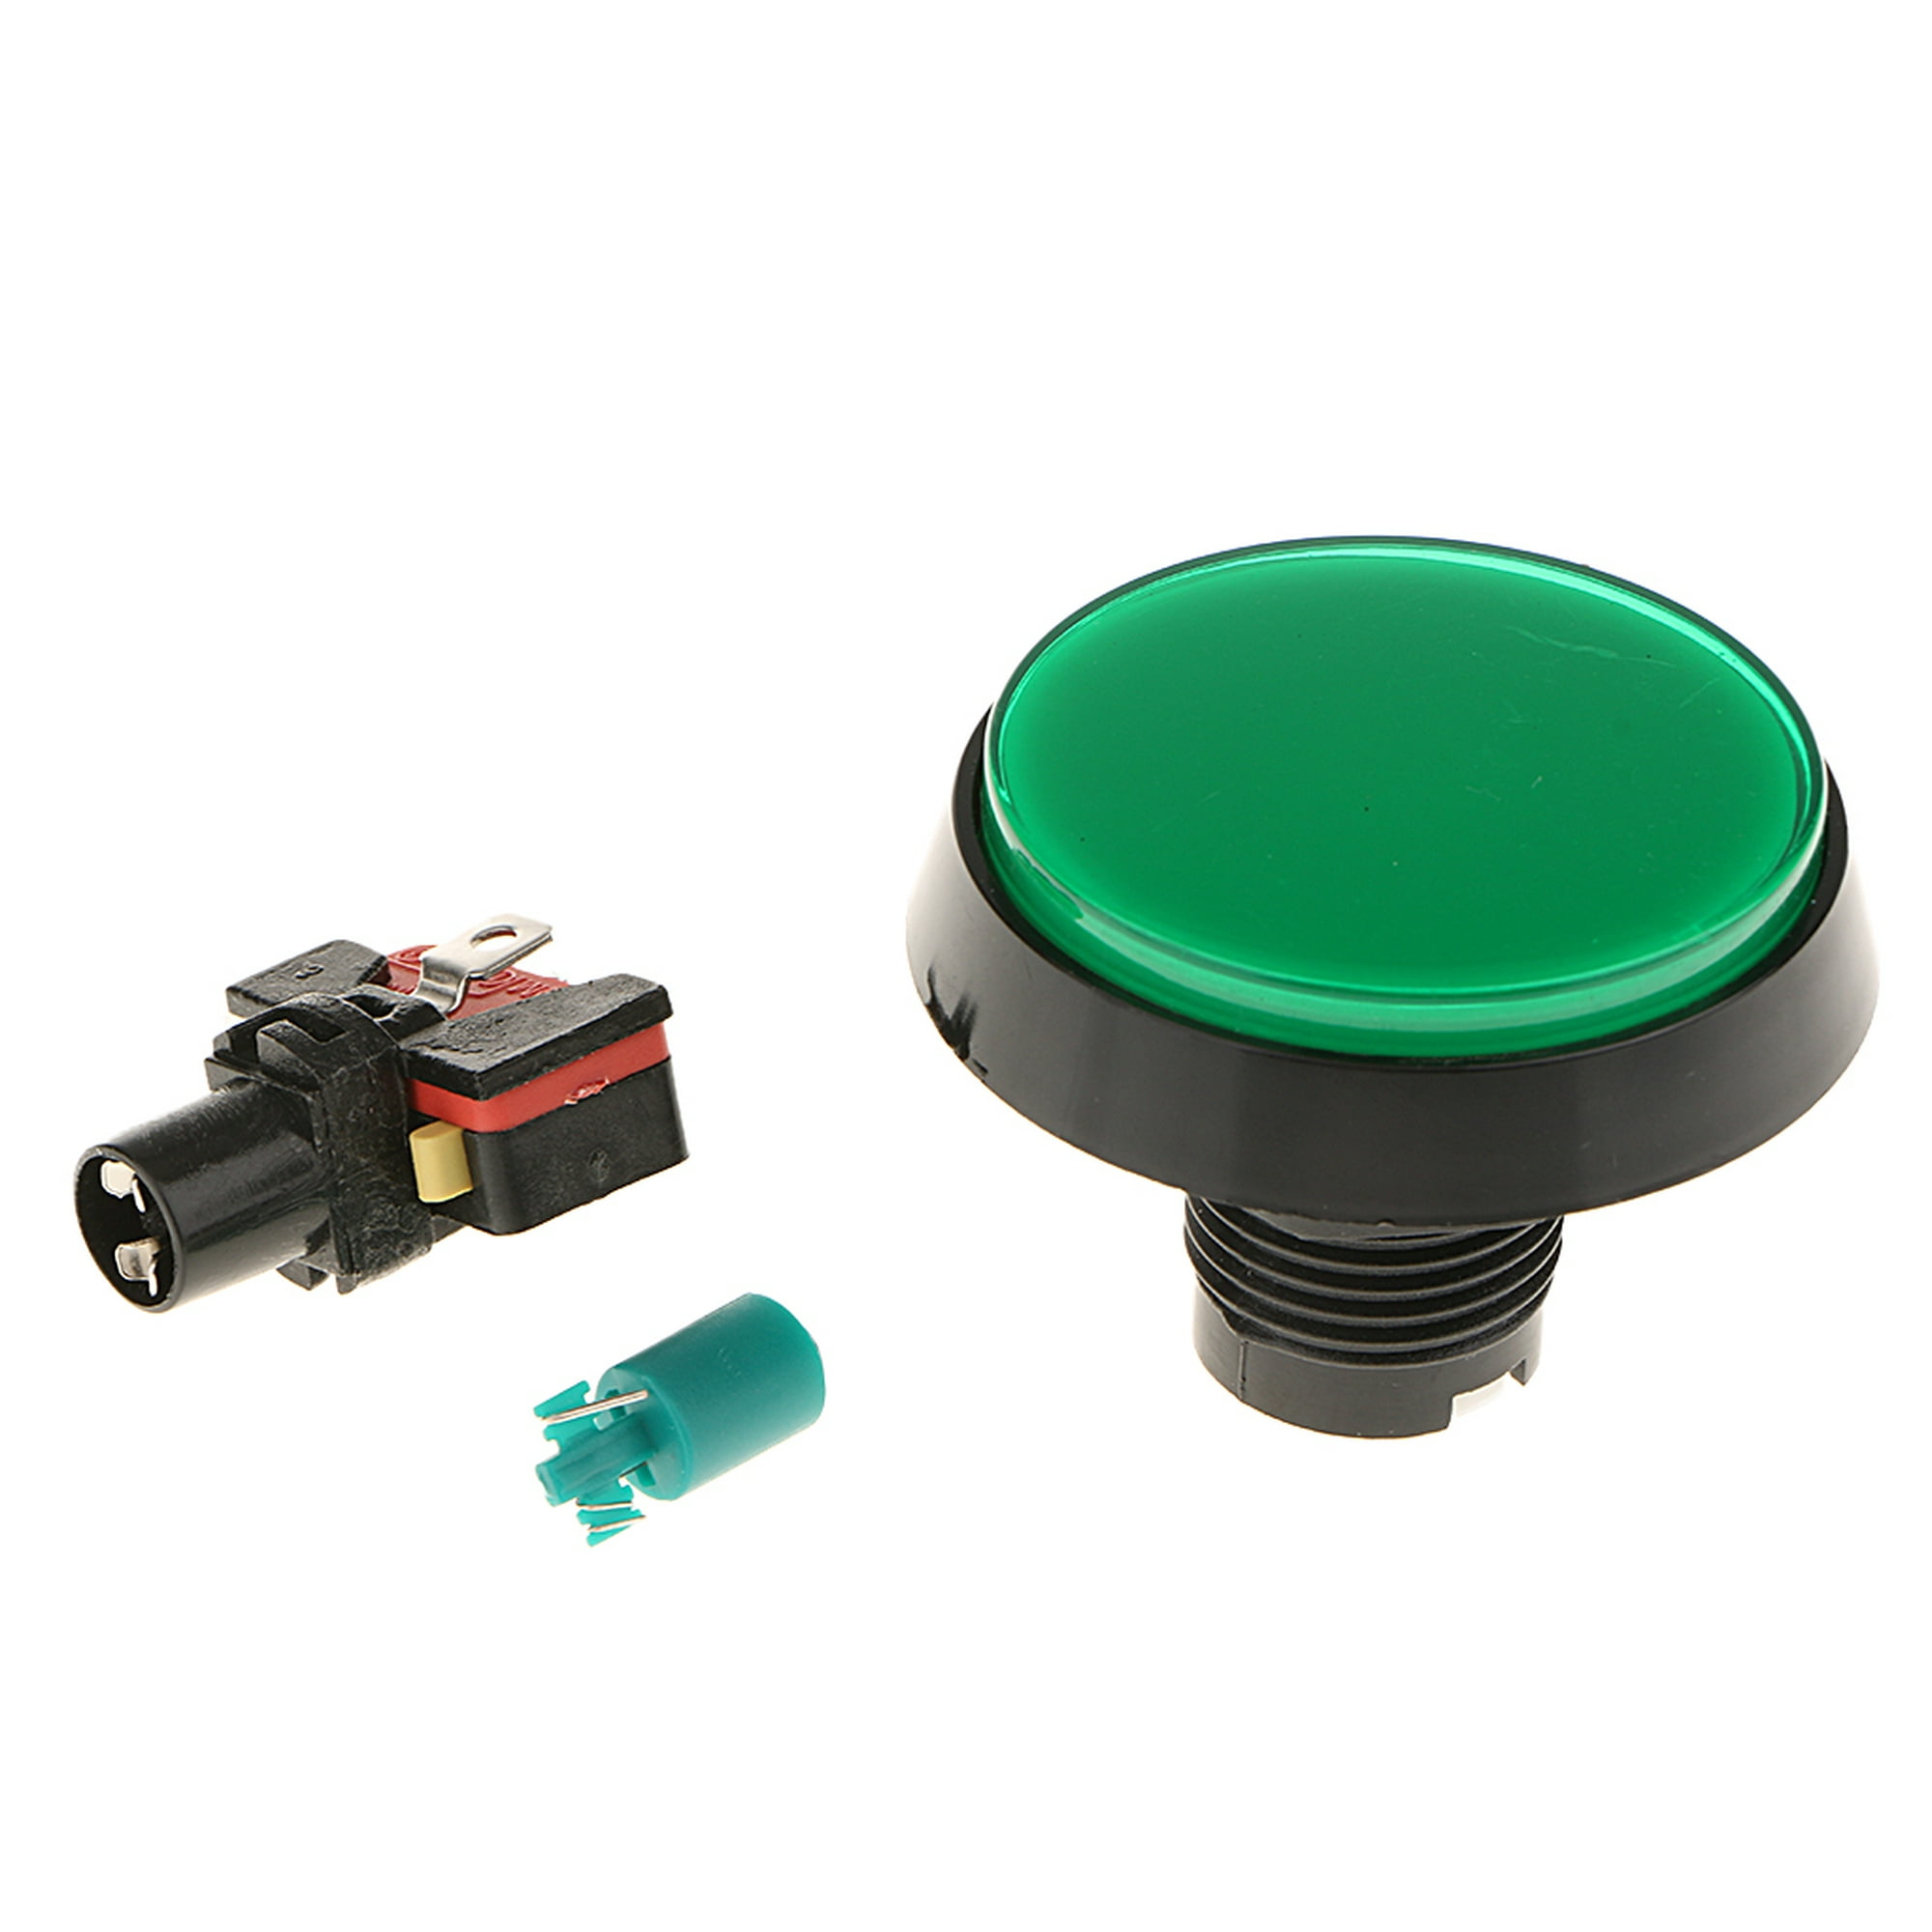 Botones pulsadores rectangulares para juegos, luz LED de 5 colores con  microinterruptores [para juego de arcade] -1.929x1.299 in/12V/5 piezas